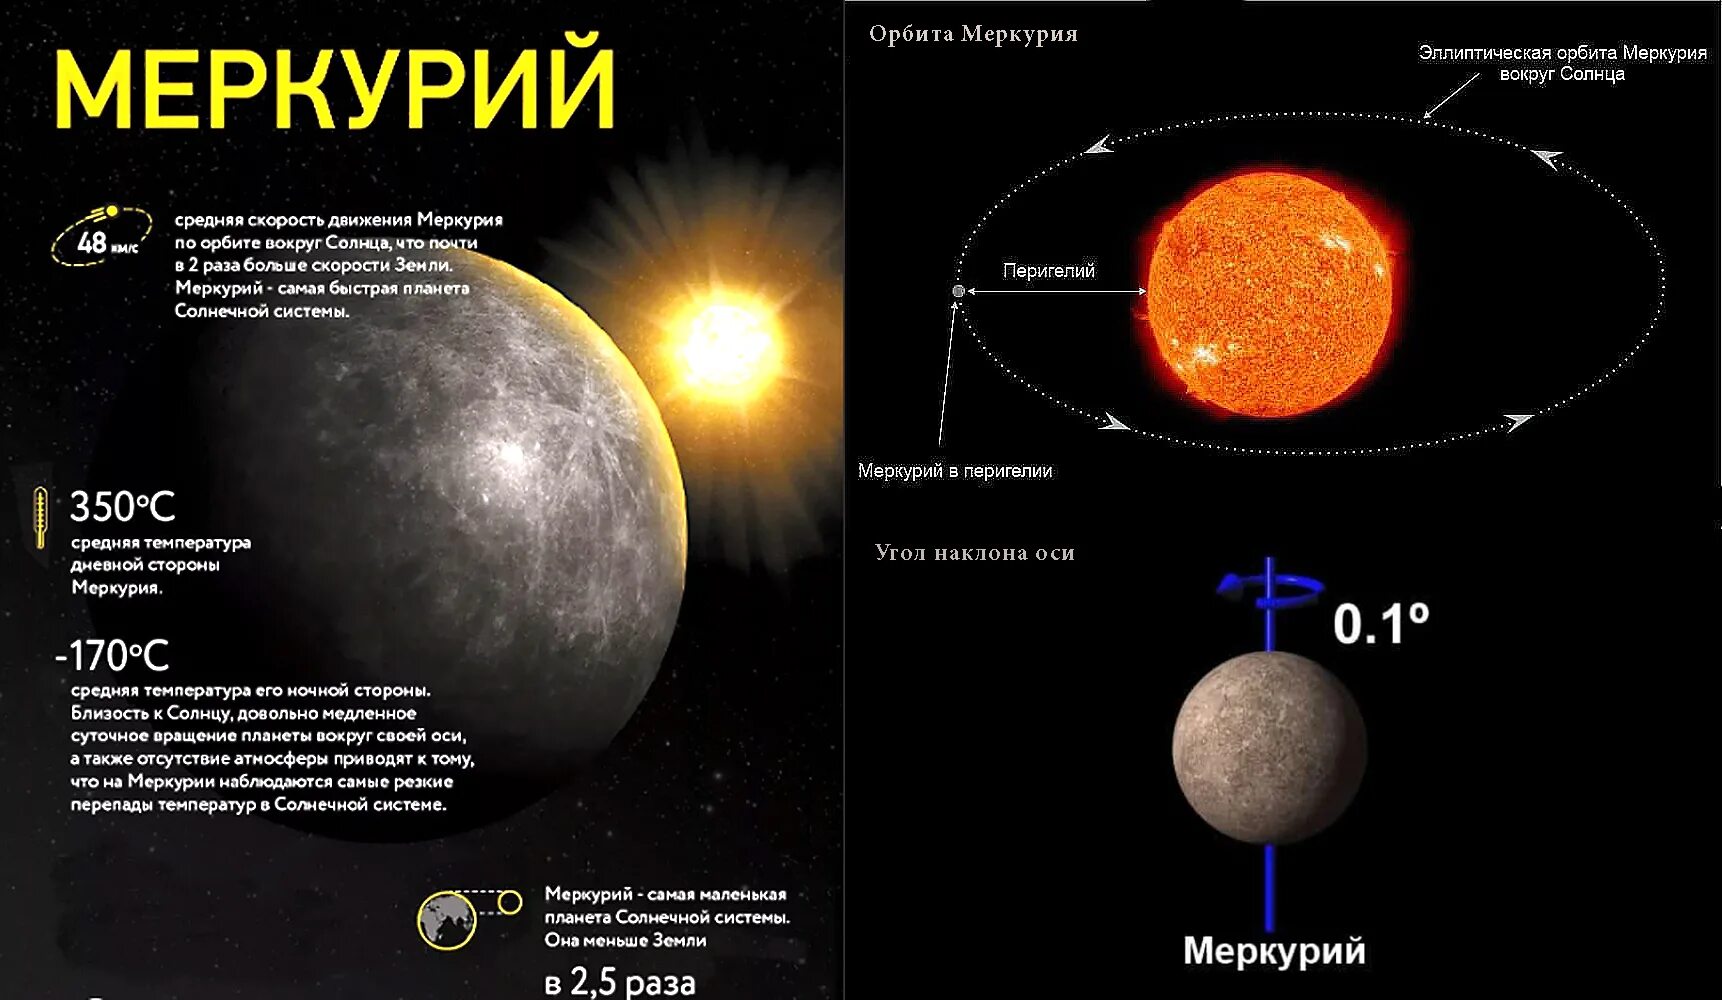 Движение планеты венеры вокруг солнца. Направление вращения Меркурия. Меркурий Орбита вокруг солнца. Меркурий Планета угол наклона оси. Угол наклона оси вращения Меркурия.